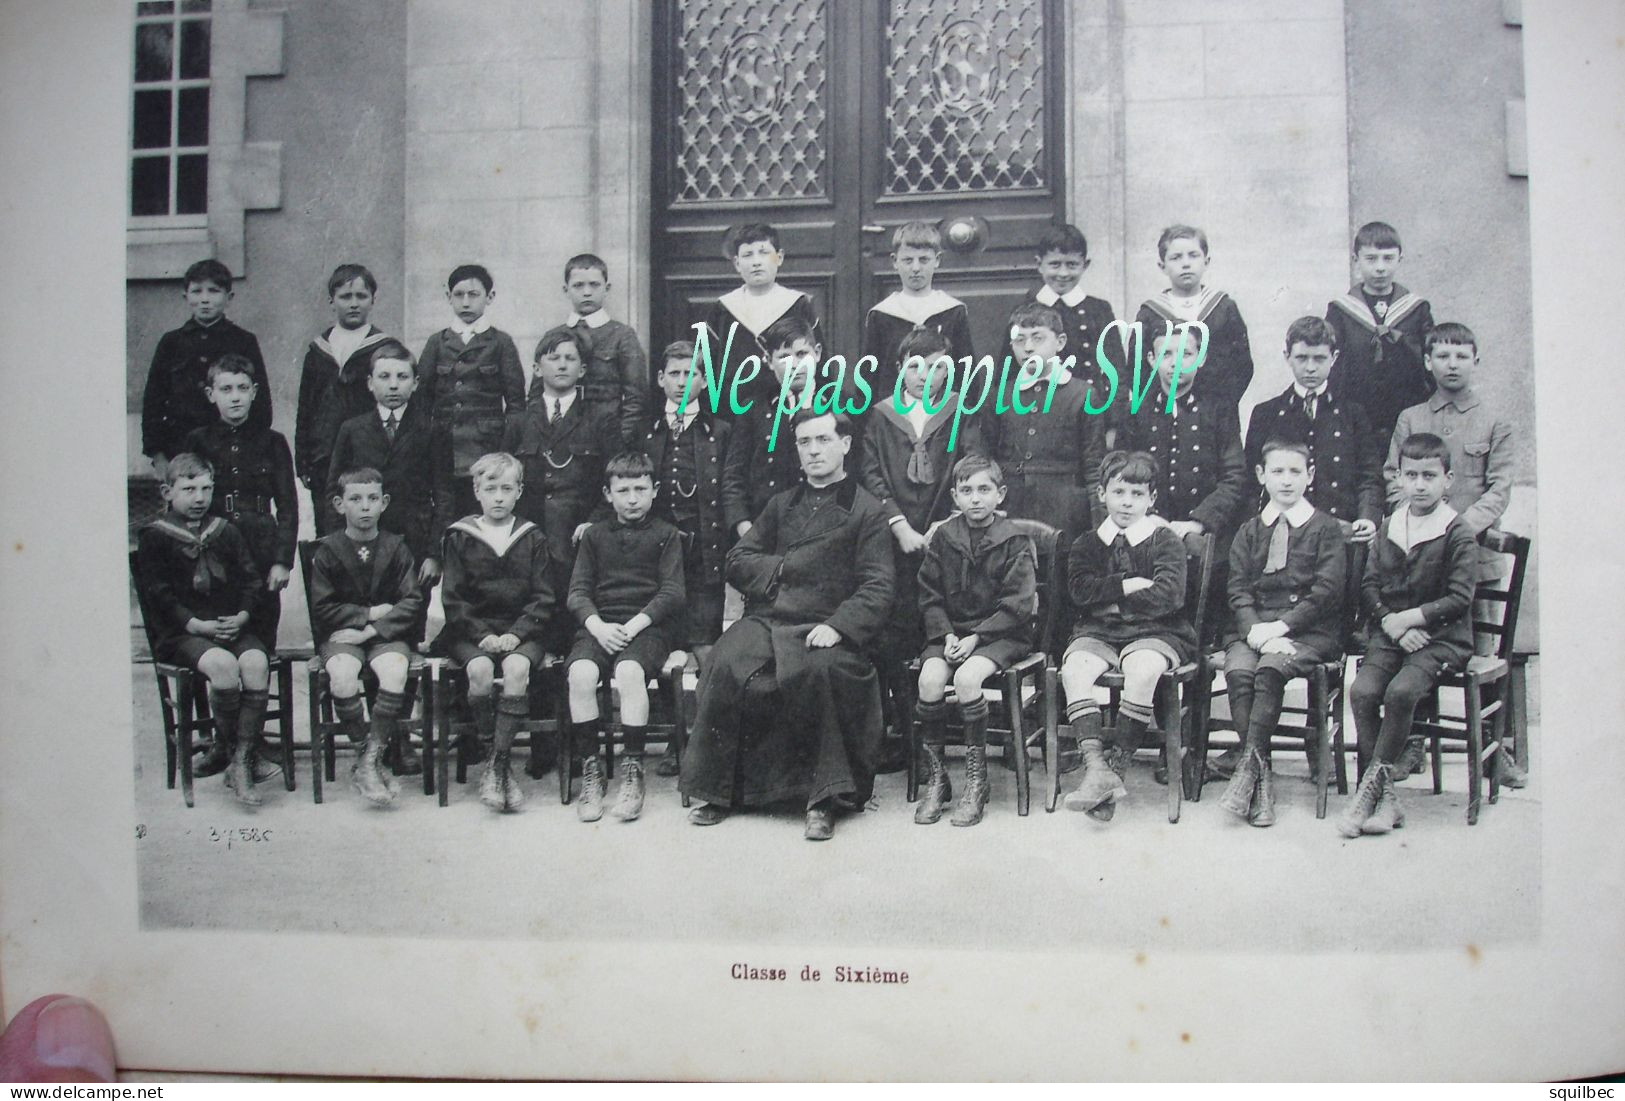 ALBUM de 1921 institution SAINTE MARIE à BOURGES (18) seize photos grand format des lieux et des élèves